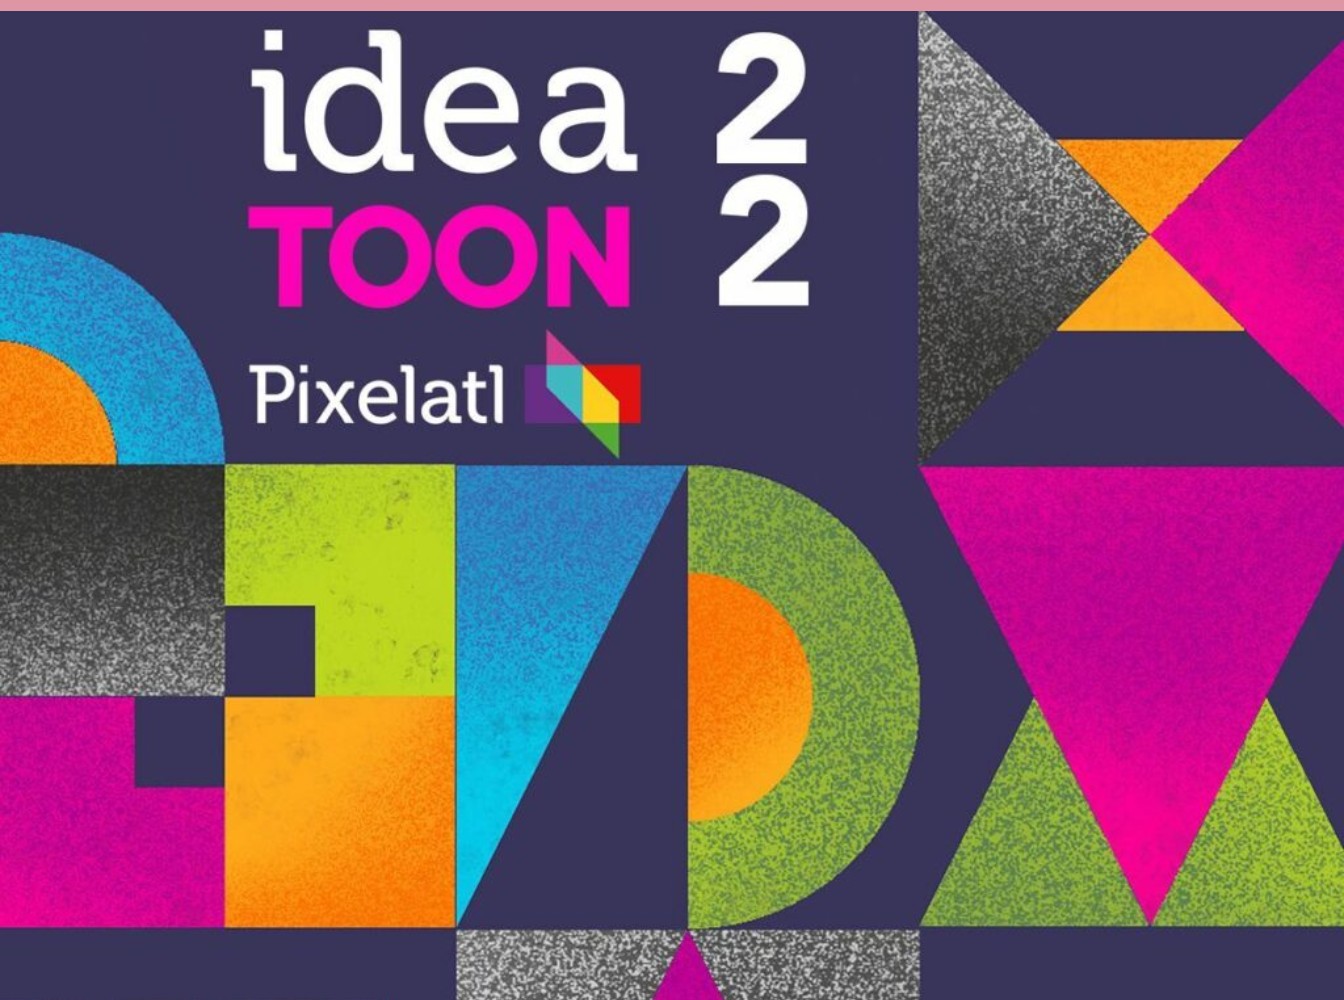 Ideatoon 2022: Pixalatl te invita a presenta tu proyecto a las principales cadenas del mundo